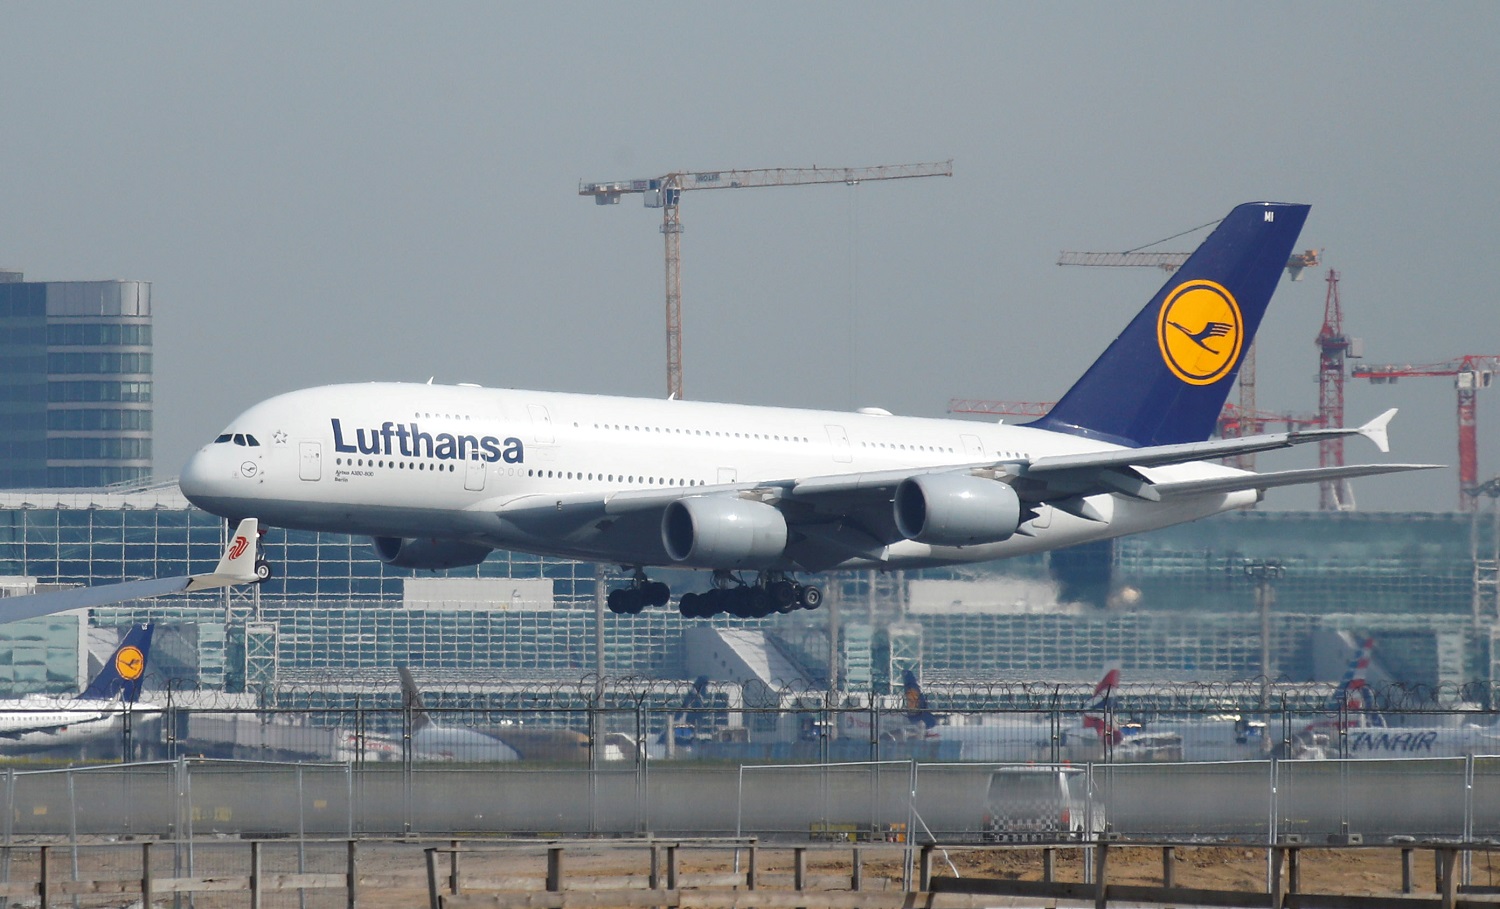 طائرة لشركة الطيران الألمانية لوفتهانزا تهبط في مطار فرانكفورت. ألمانيا .29 أبريل 2019. (رويترز) / رالف أورلوسكي